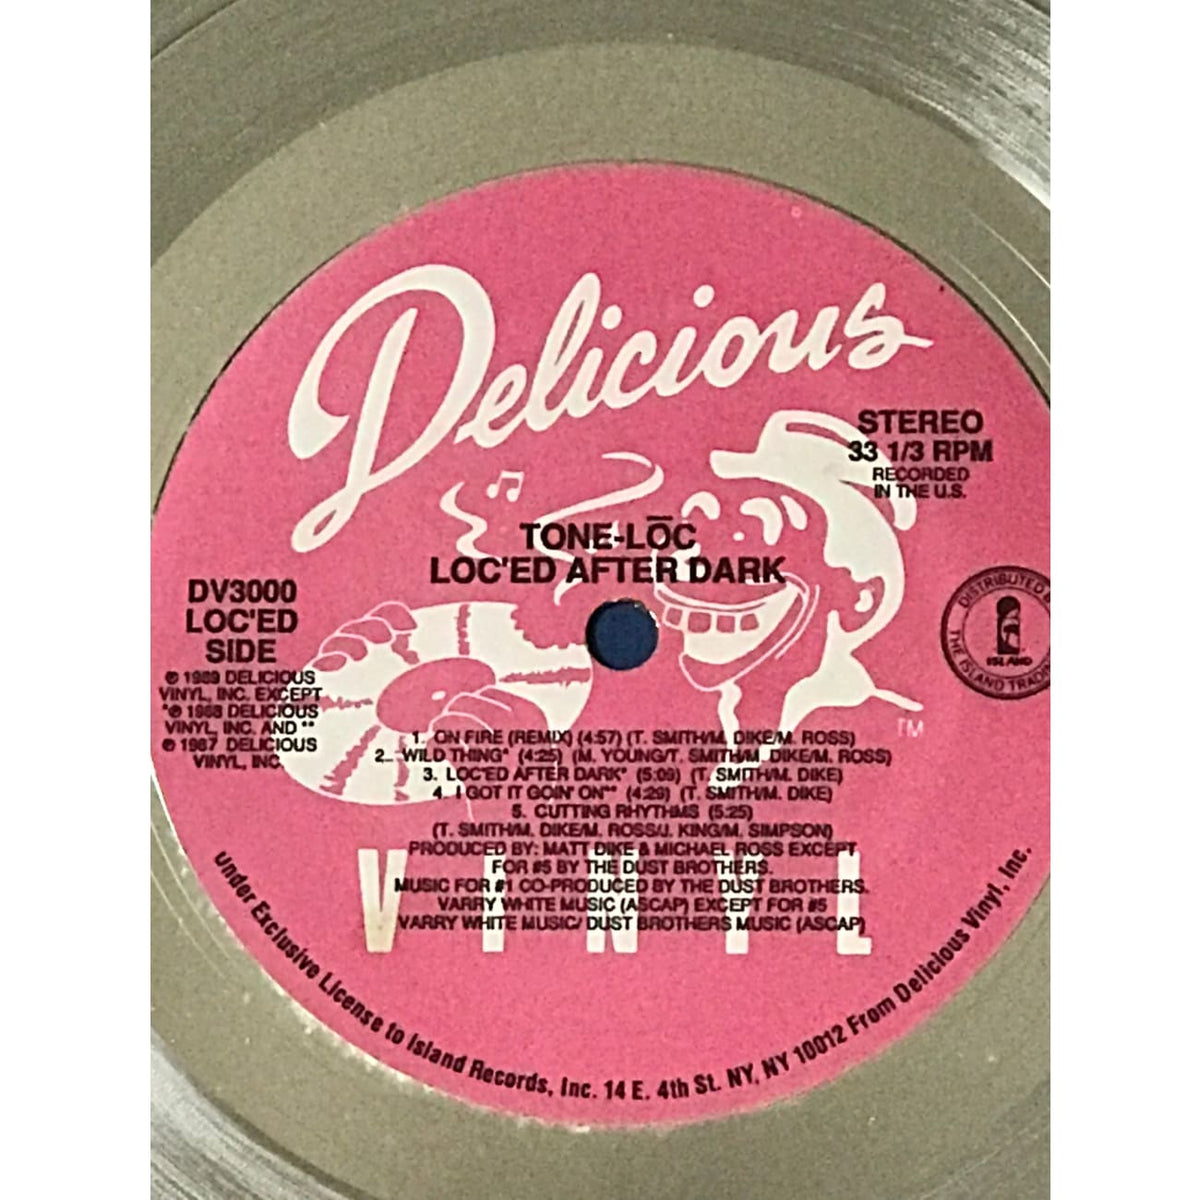 musicgoldmine.com - Tone Lōc After Dark RIAA 2x Multi-Platinum Album Award MusicGoldmine.com